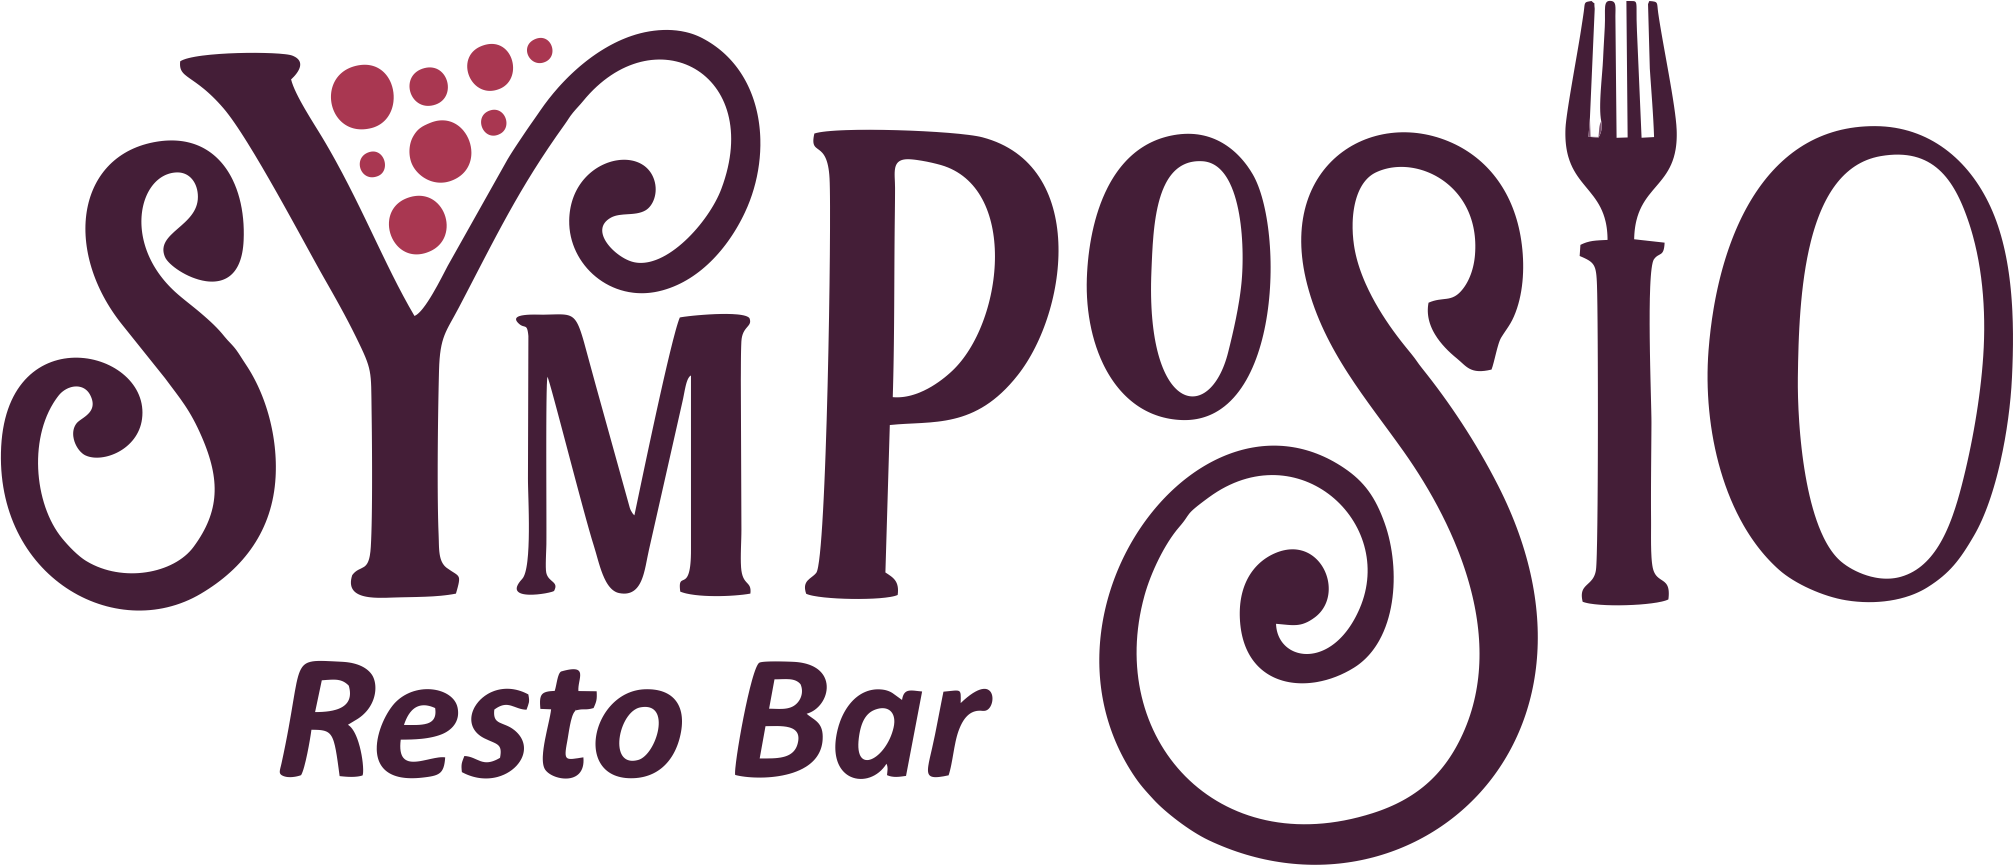 Symposio Resto Bar  - Φωτογραφία εταιρίας